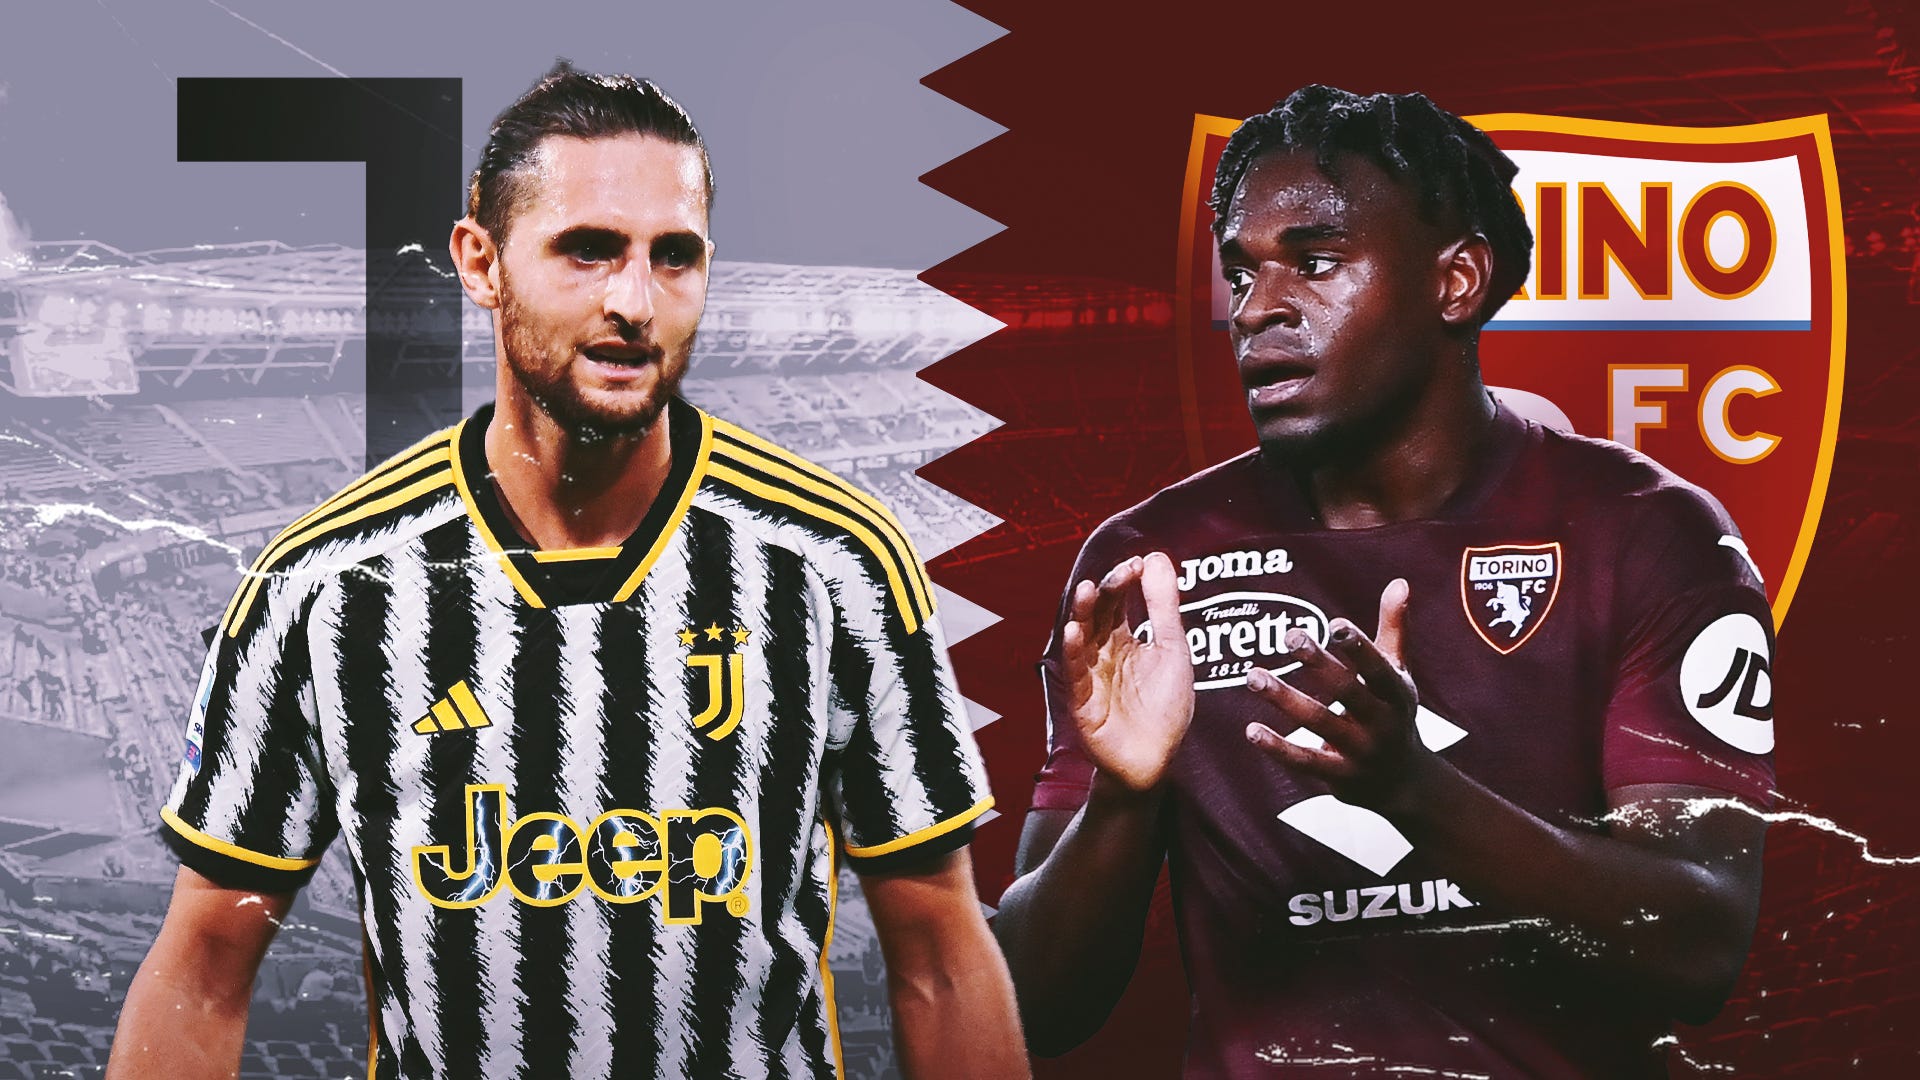 Juventus x Torino - SoccerBlog